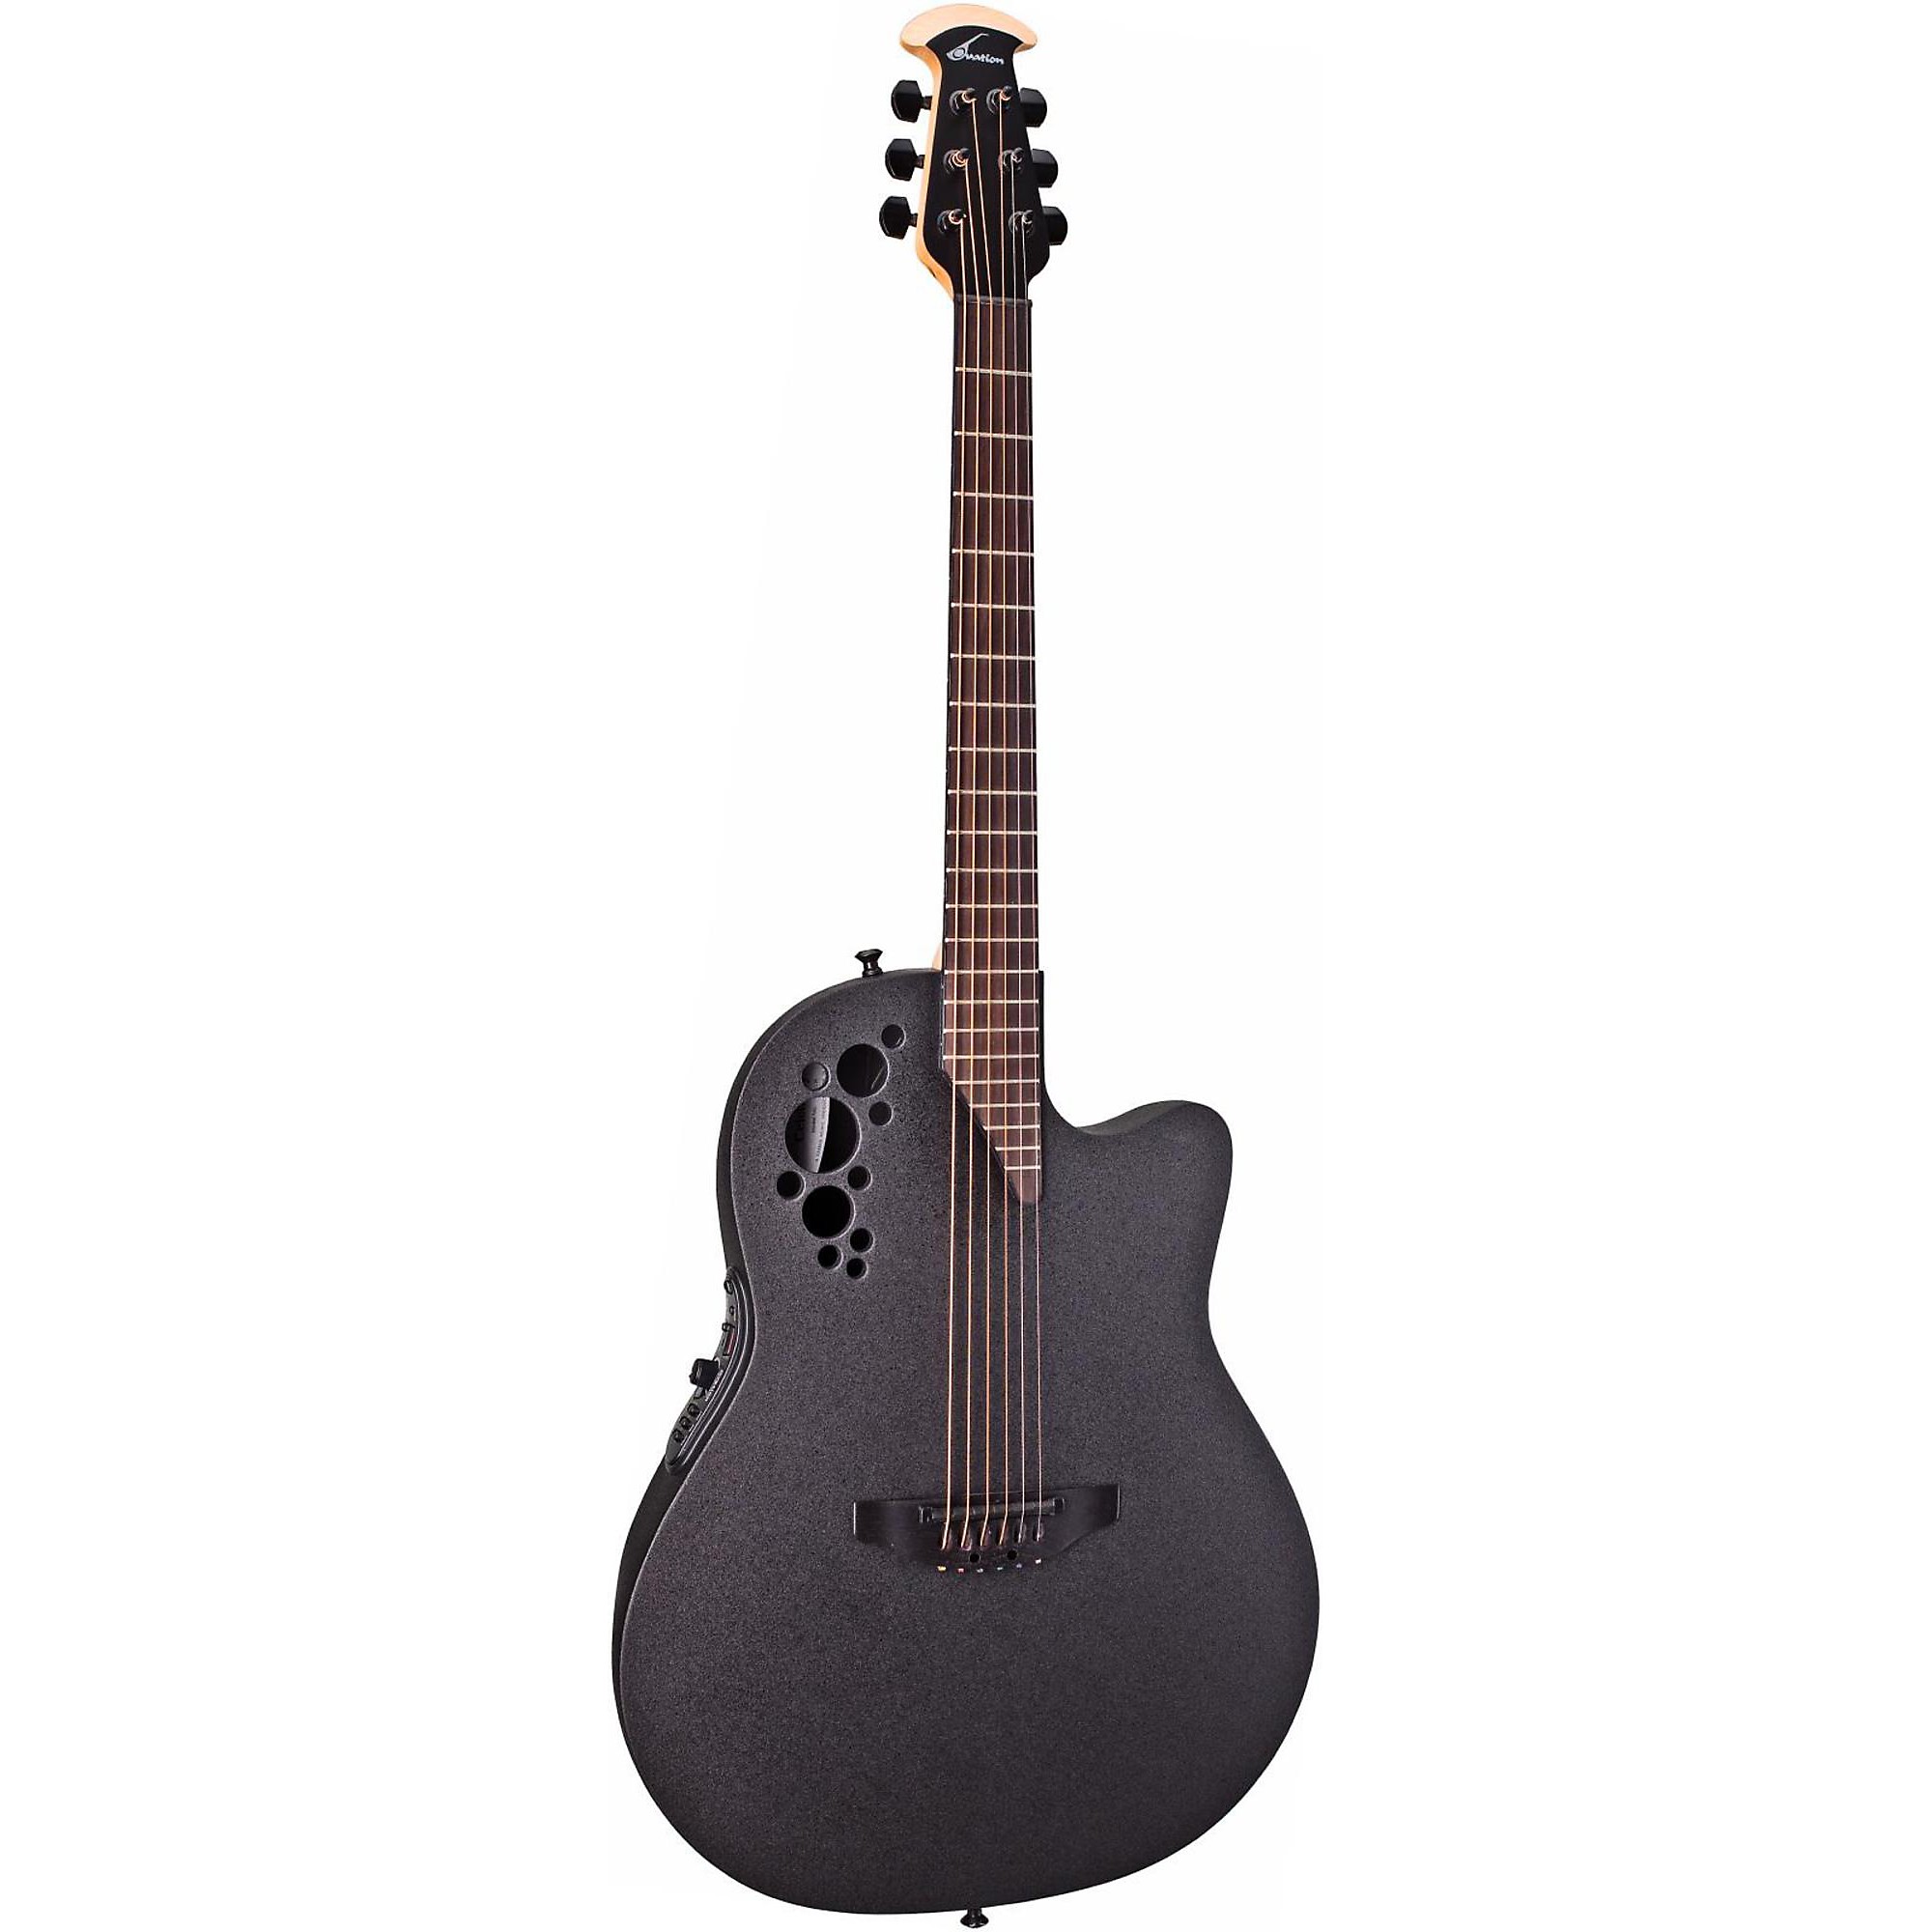 Акустически-электрическая гитара Ovation Elite 1778 TX черная фото